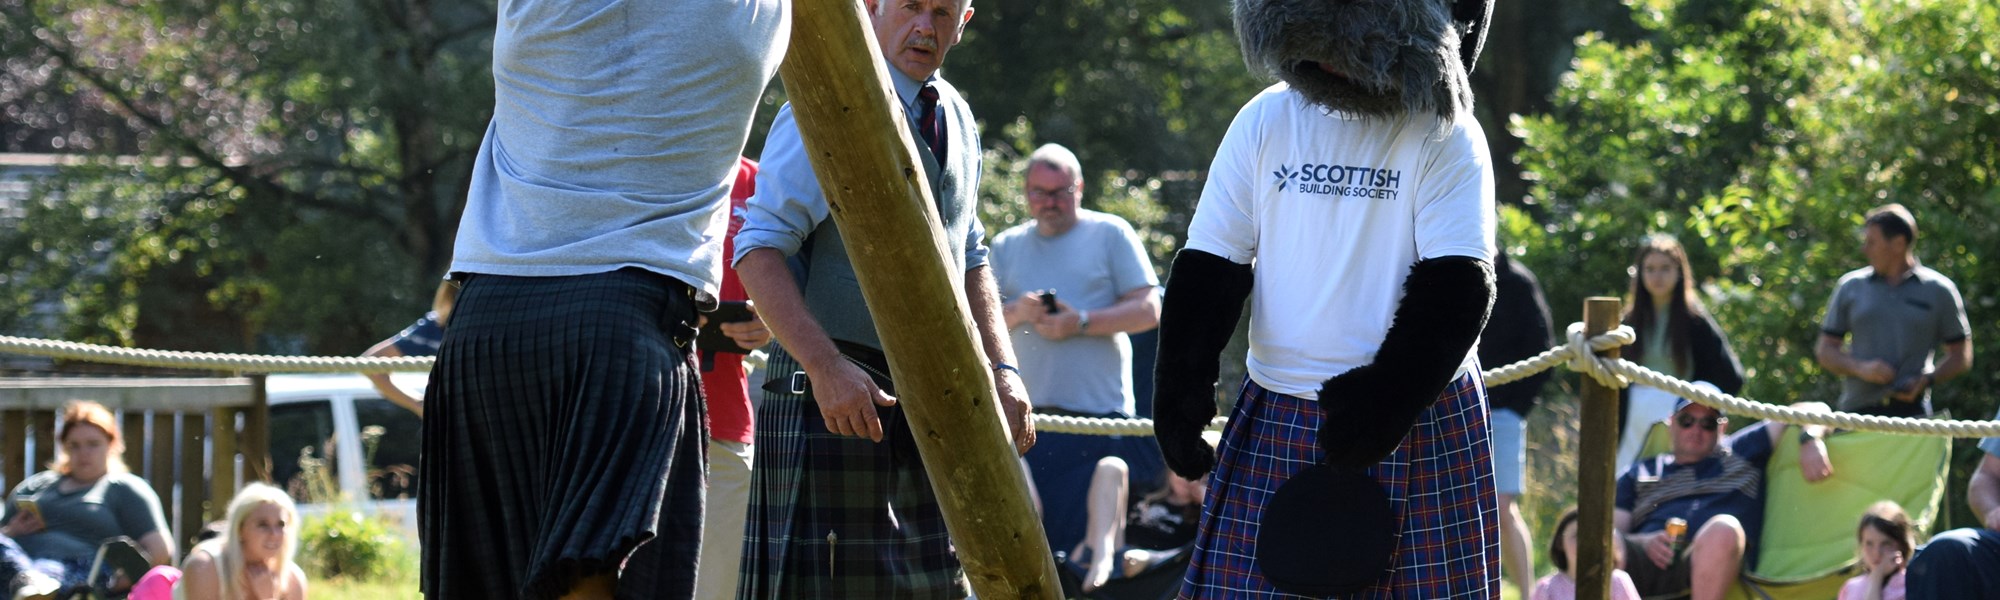 Background image: Ceres Highland Games